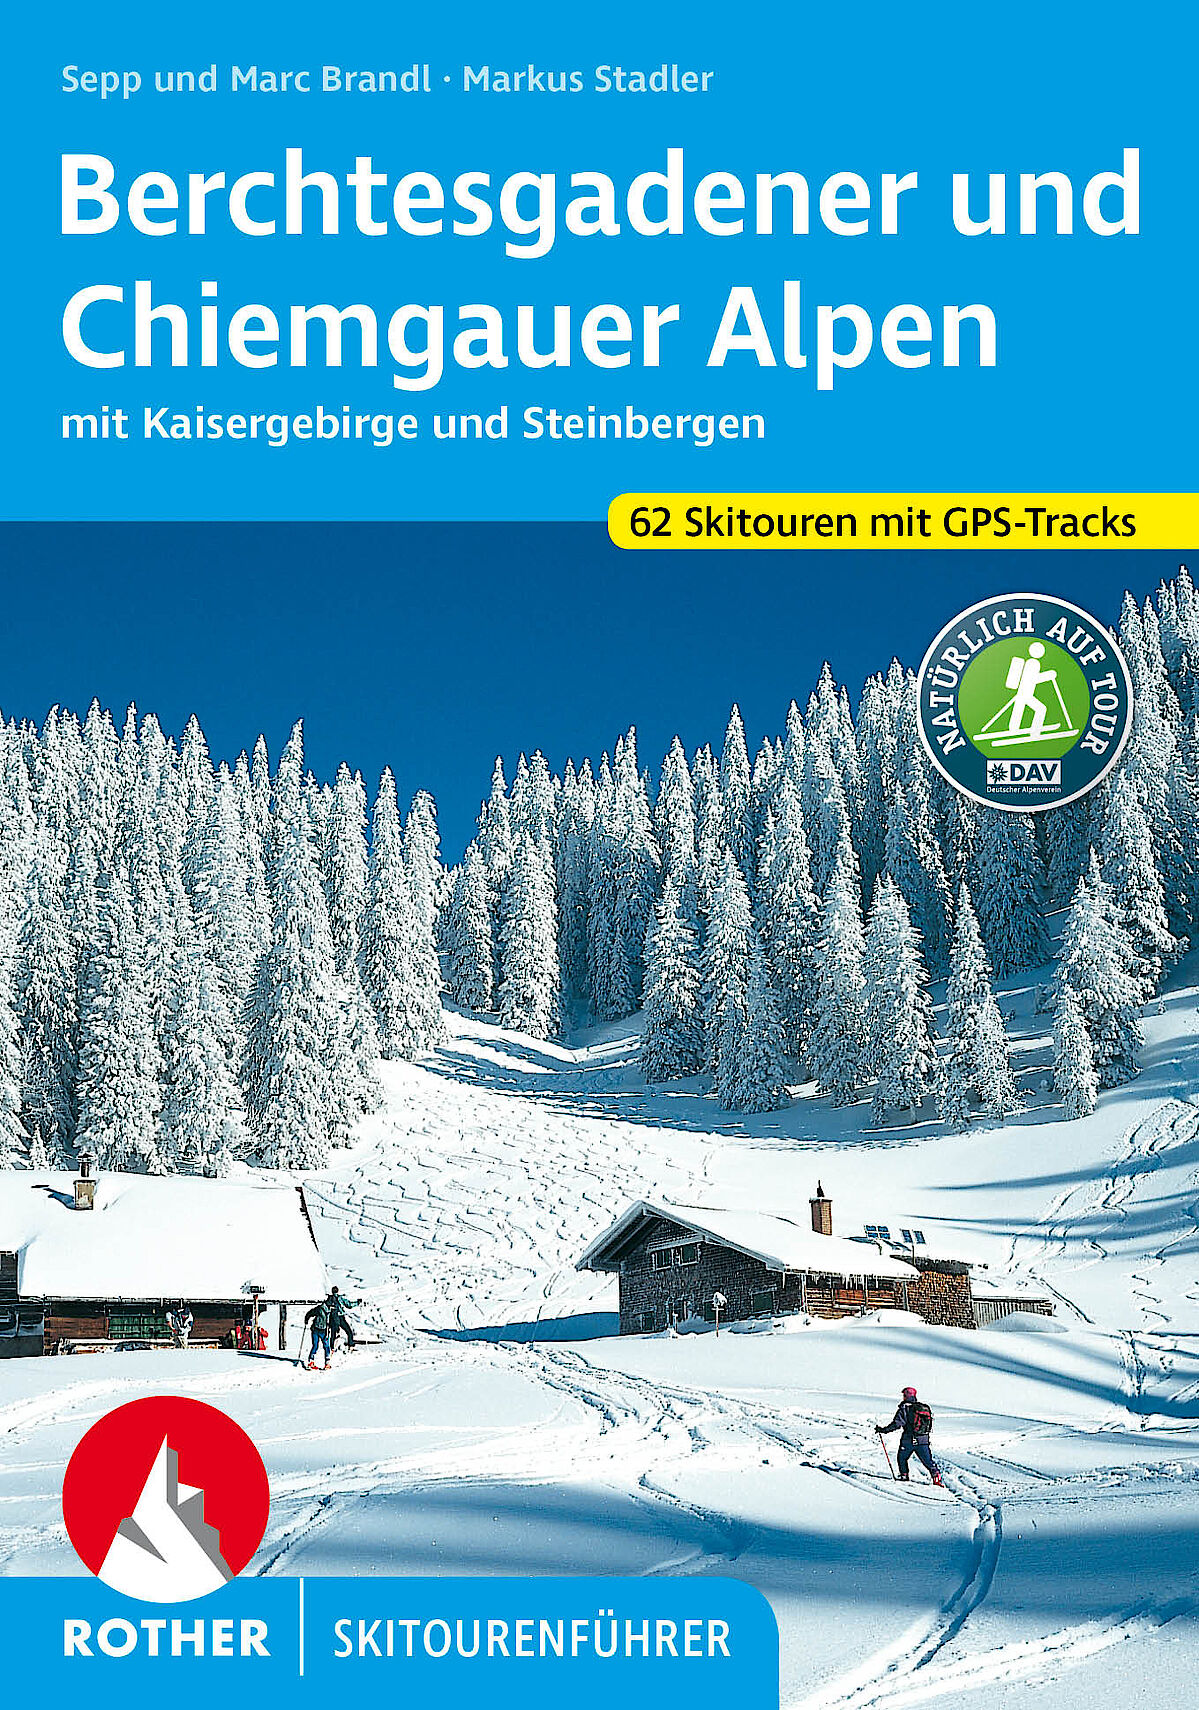 Rother Skitourenführer Berchtesgadener Alpen und Chiemgauer Alpen